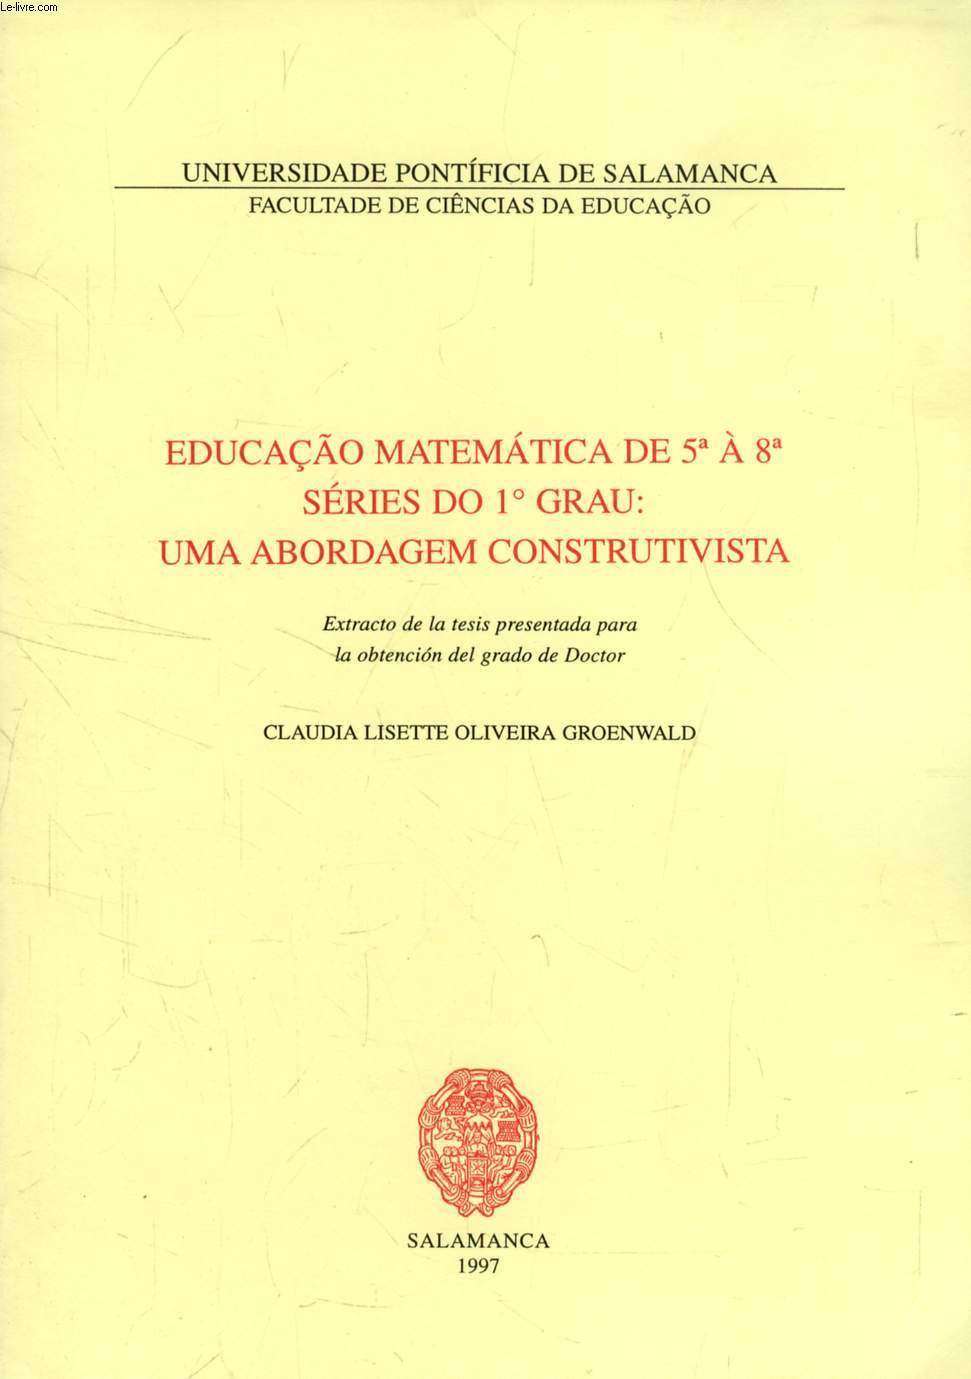 EDUCAO MATEMATICA DE 5e A 8a SERIES DO 1 GRAU: UMA ABORDAGEM CONSTRUTIVISTA (EXTRACTO DE LA TESIS)